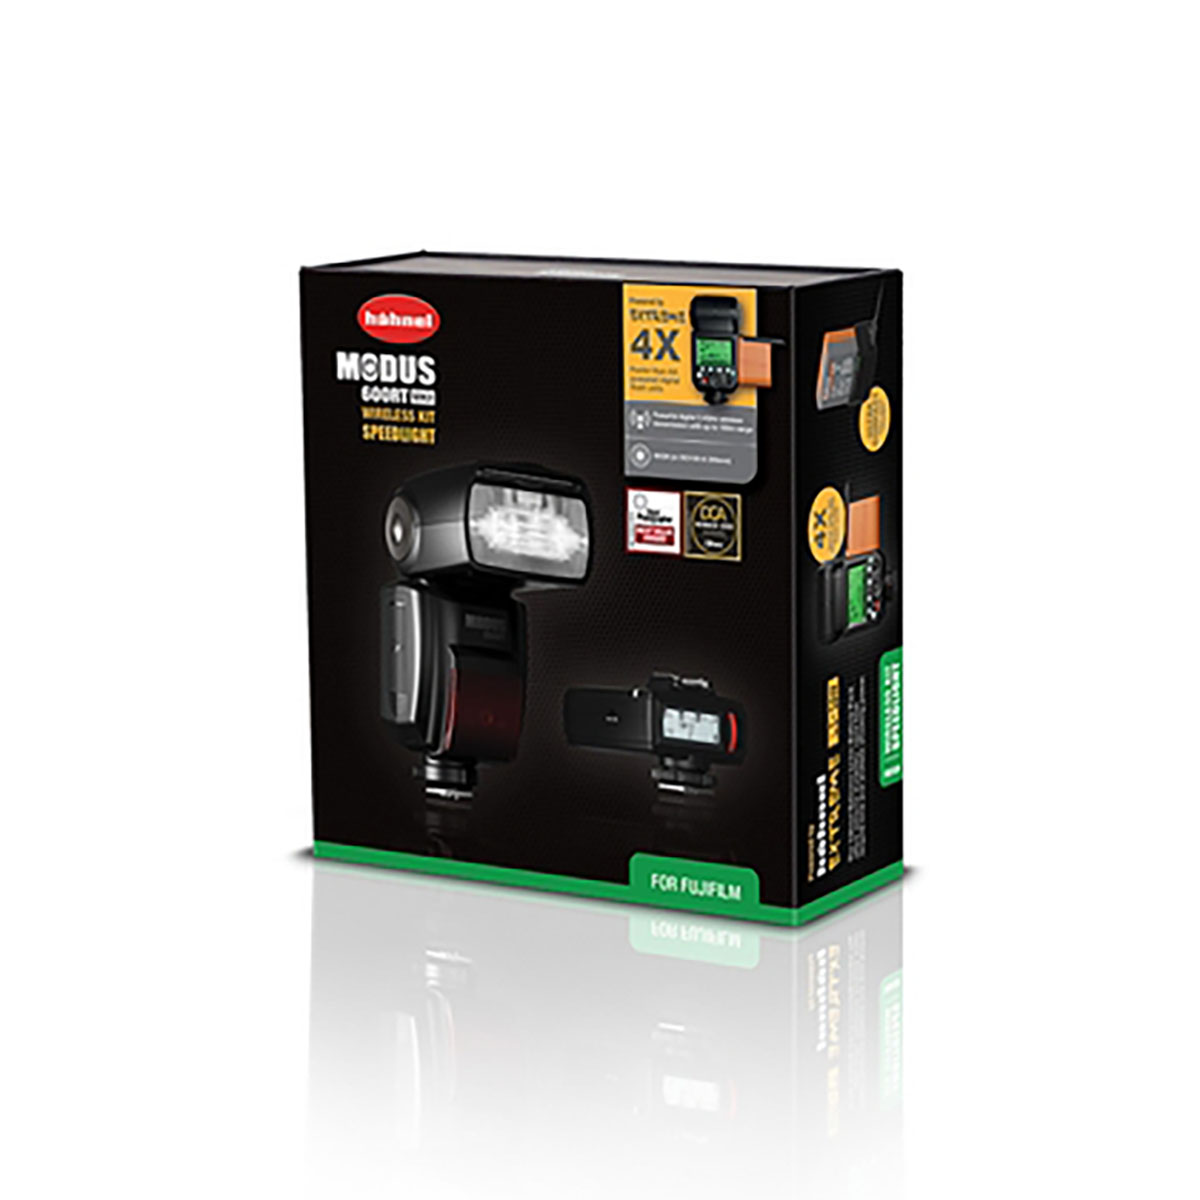 Hähnel Modus 600RT MK II Wireless Kit für Fujifilm